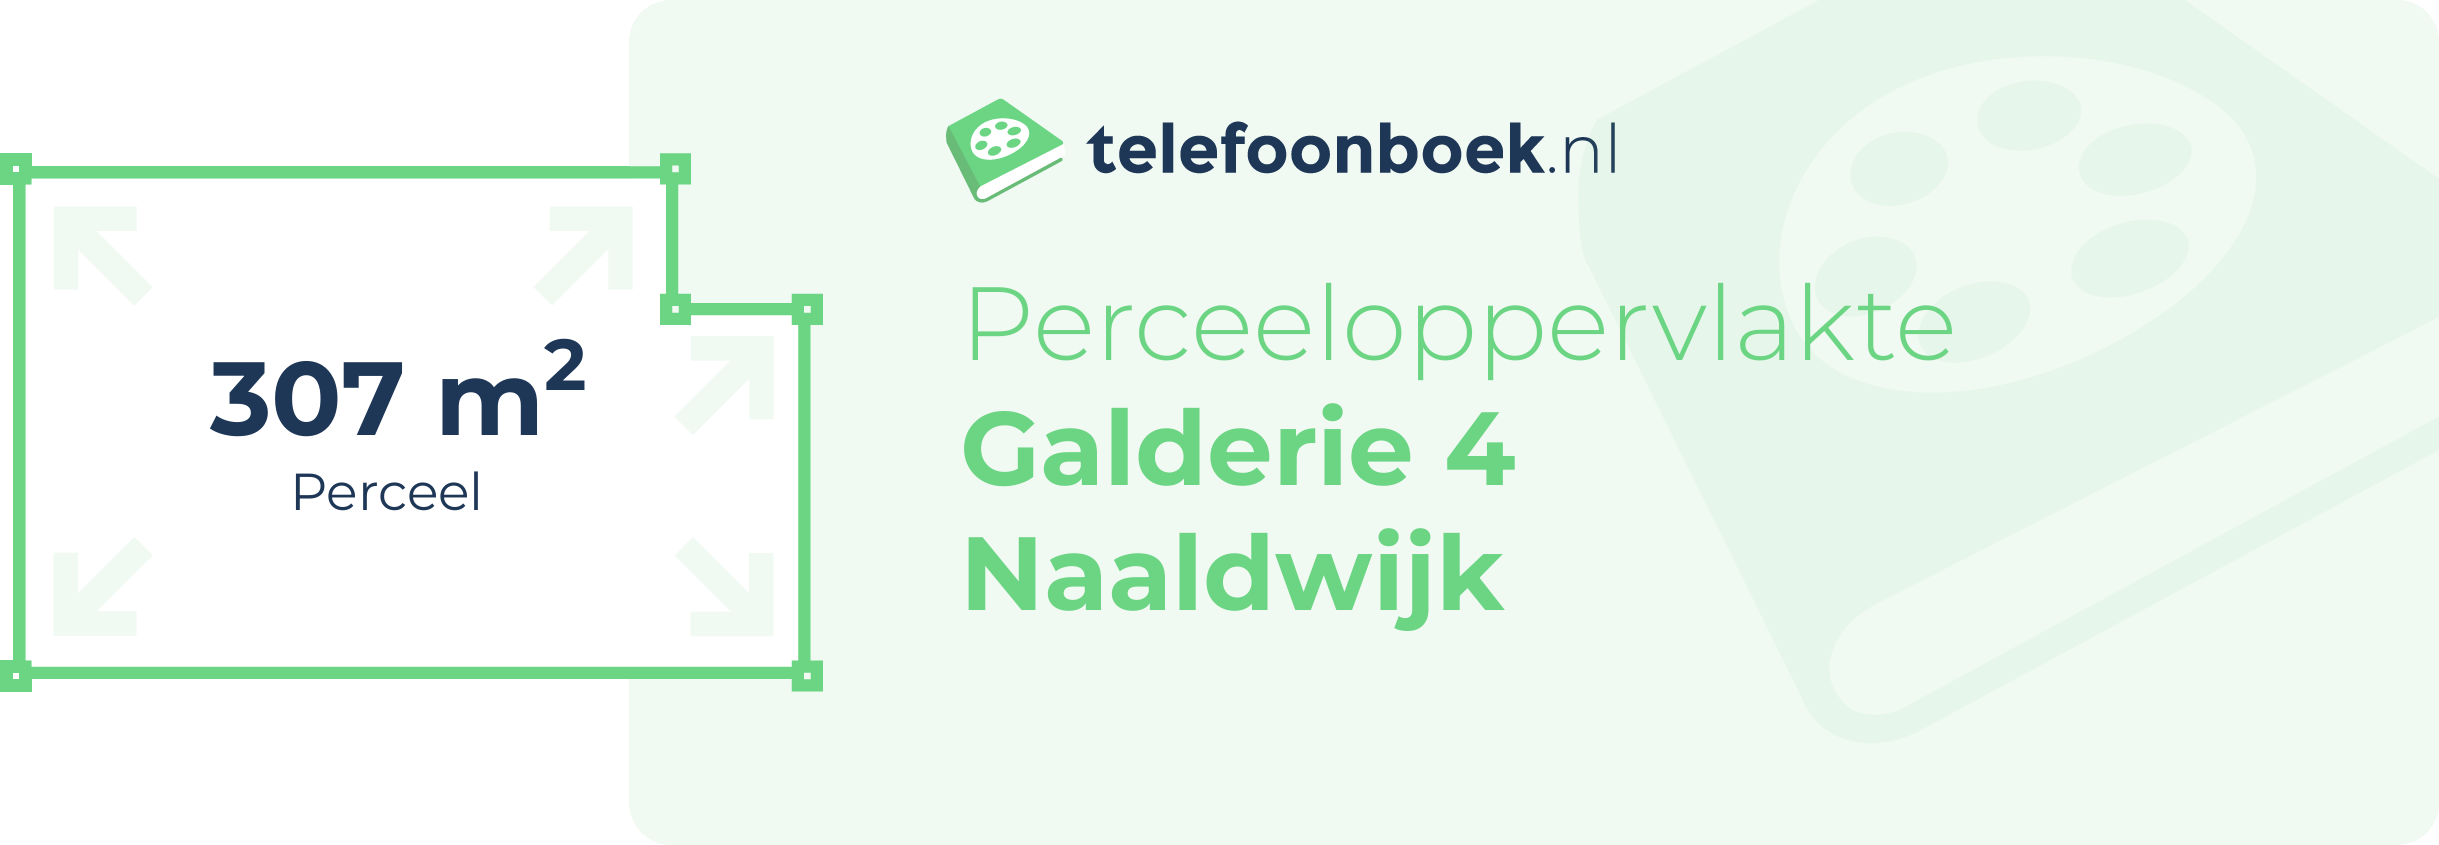 Perceeloppervlakte Galderie 4 Naaldwijk